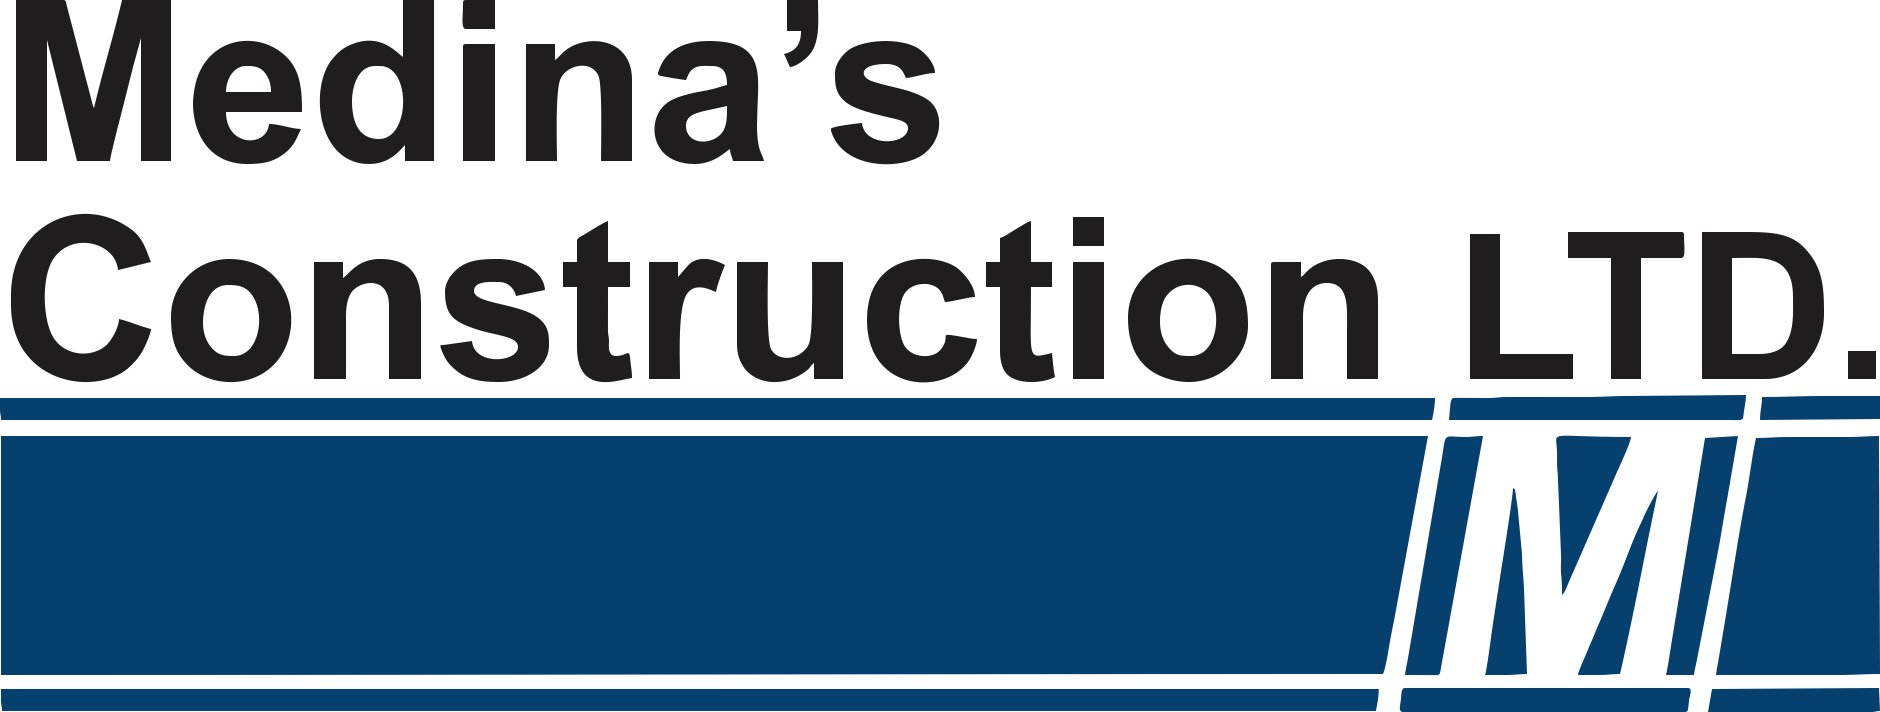 Medina's Construction Ltd